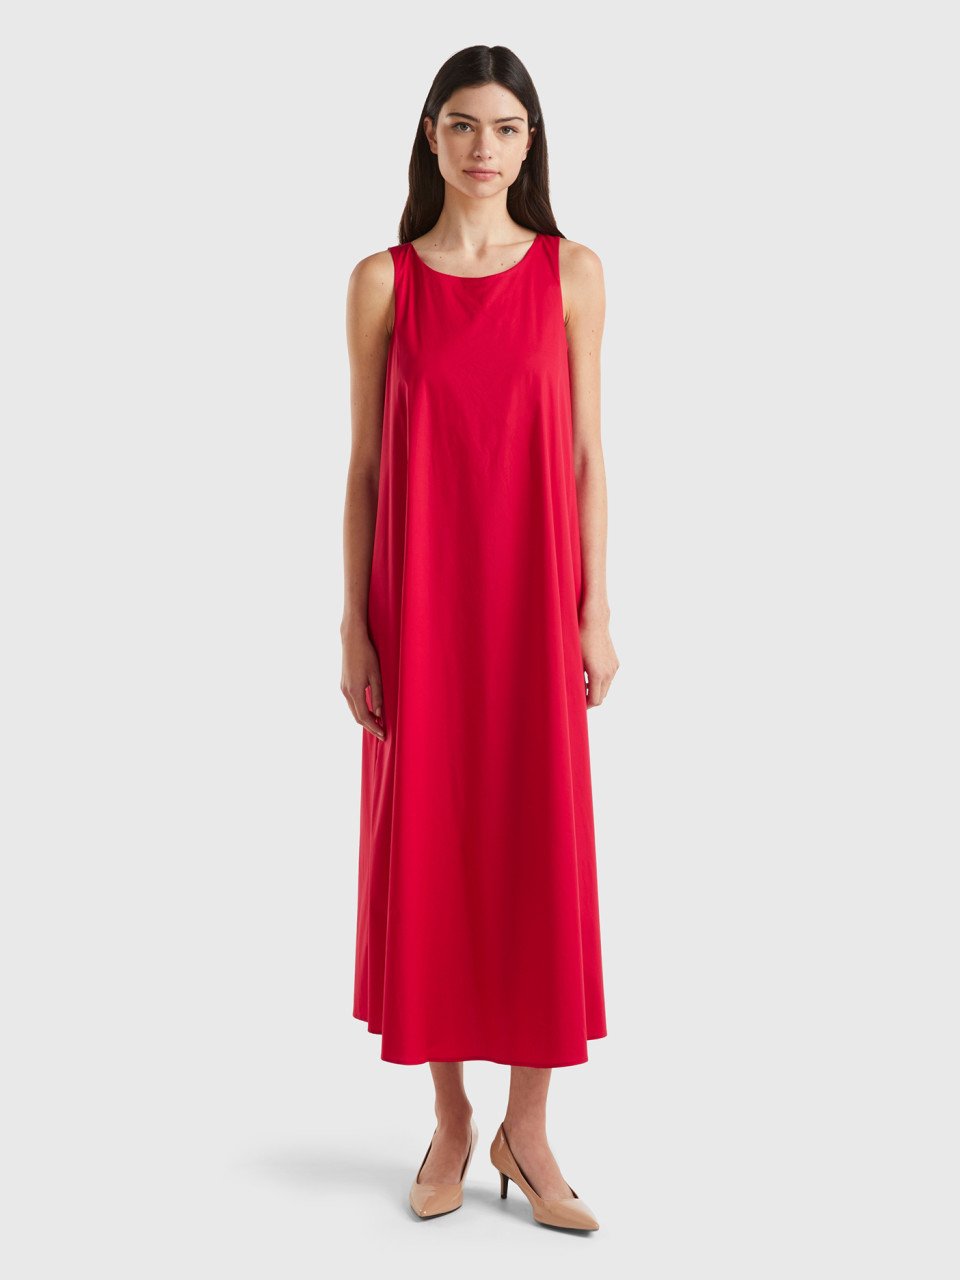 Benetton, Long Sleeveless Dress, Red, Women